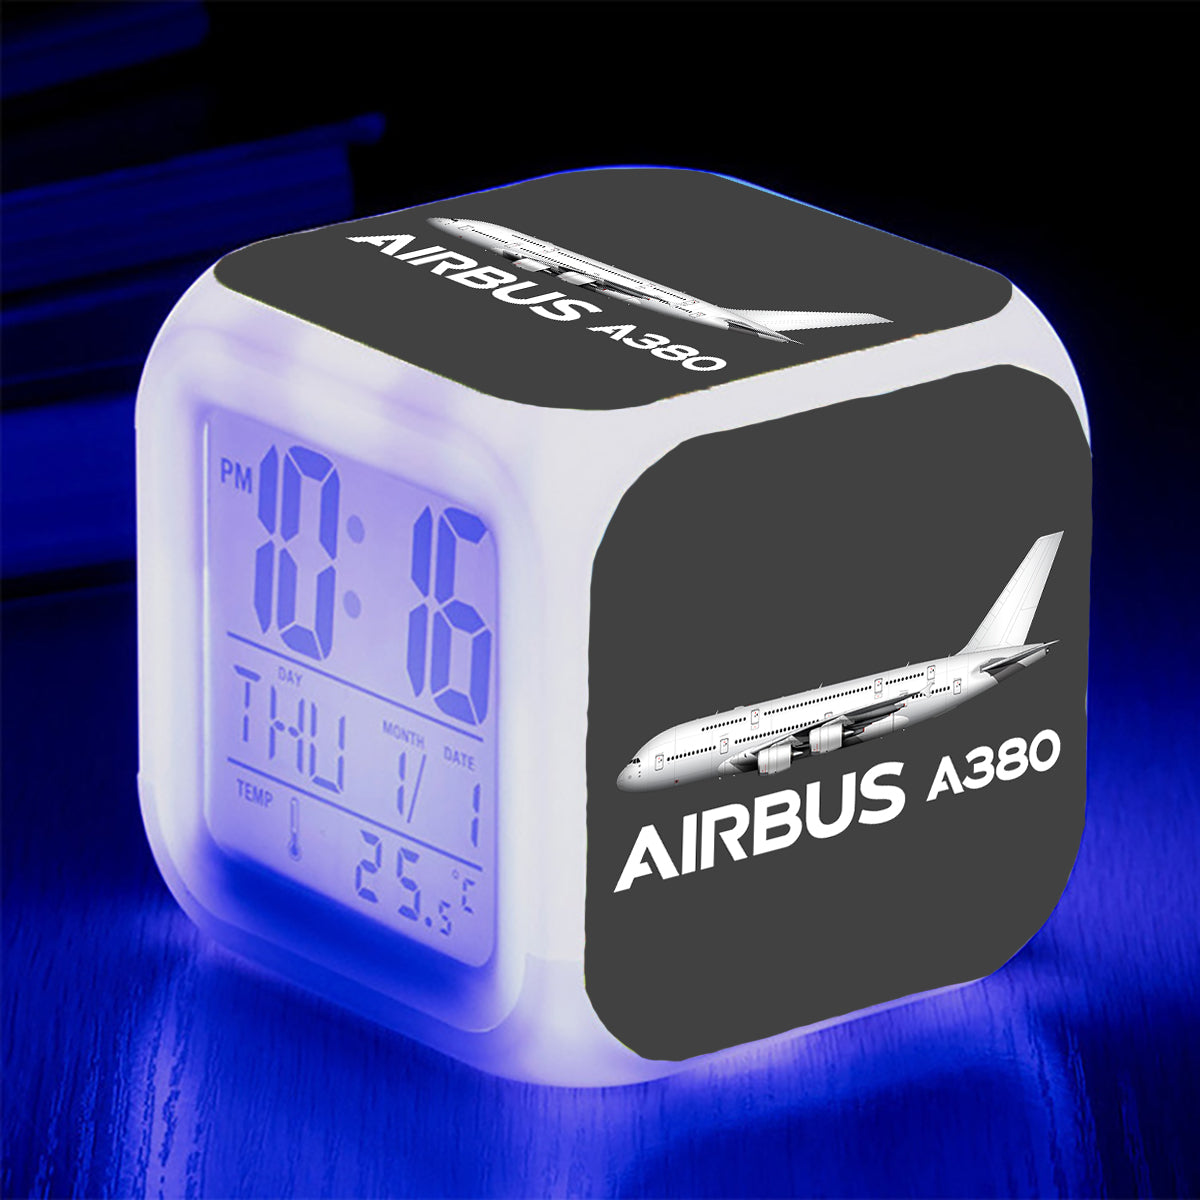 The Airbus A380 Designed "7 Colour" Digital Alarm Clock